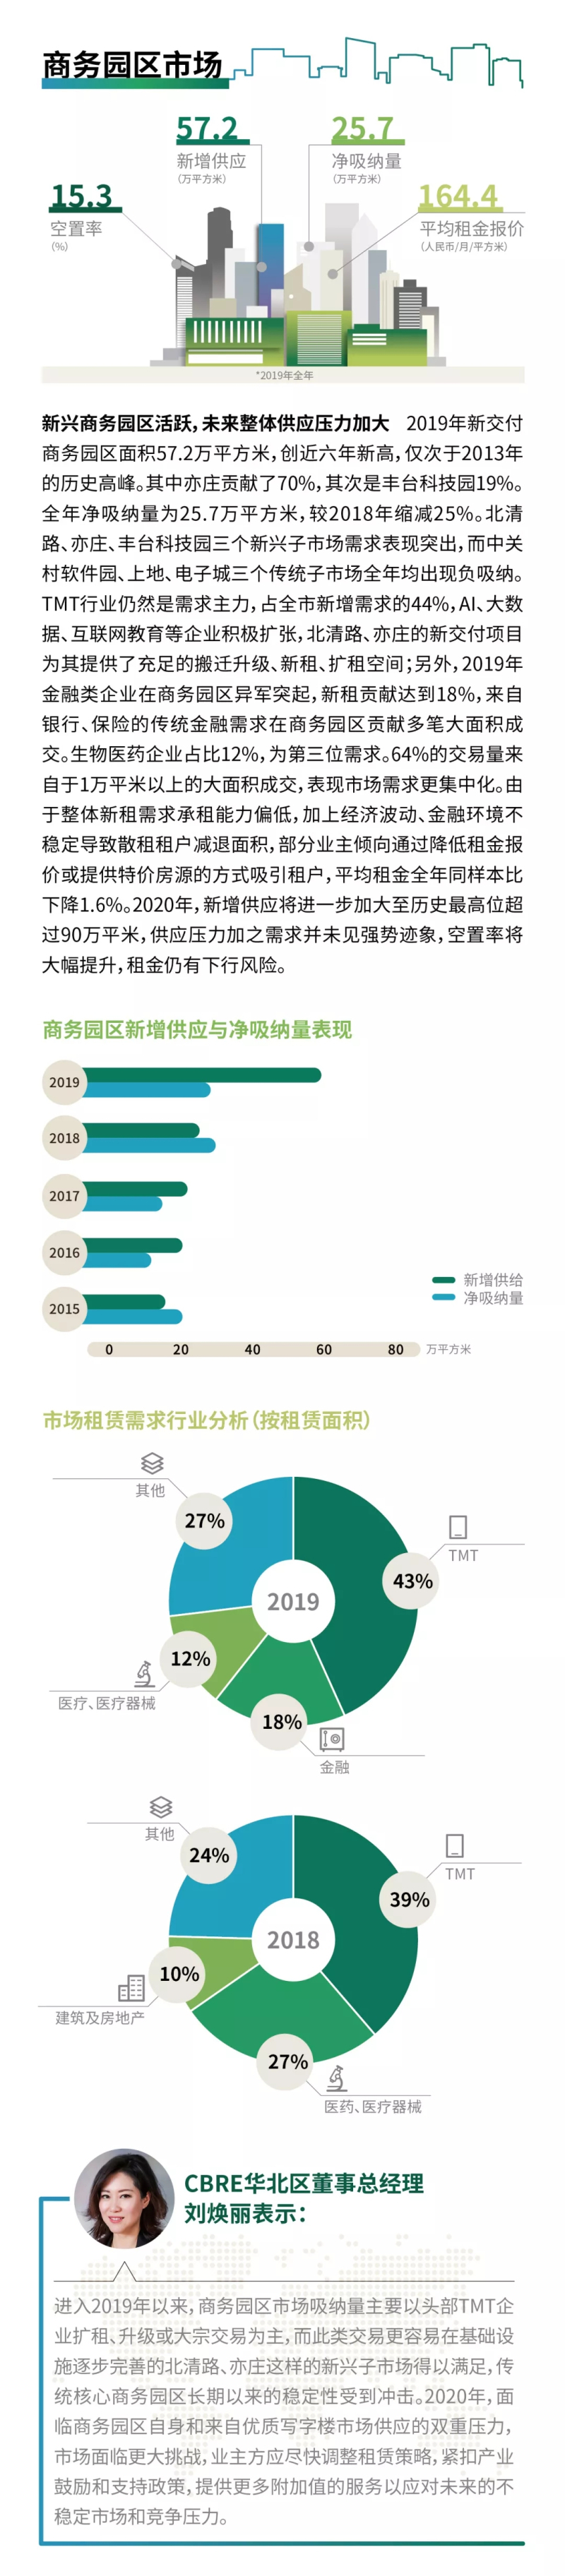 2019年北京房地产市场回顾及2020年展望